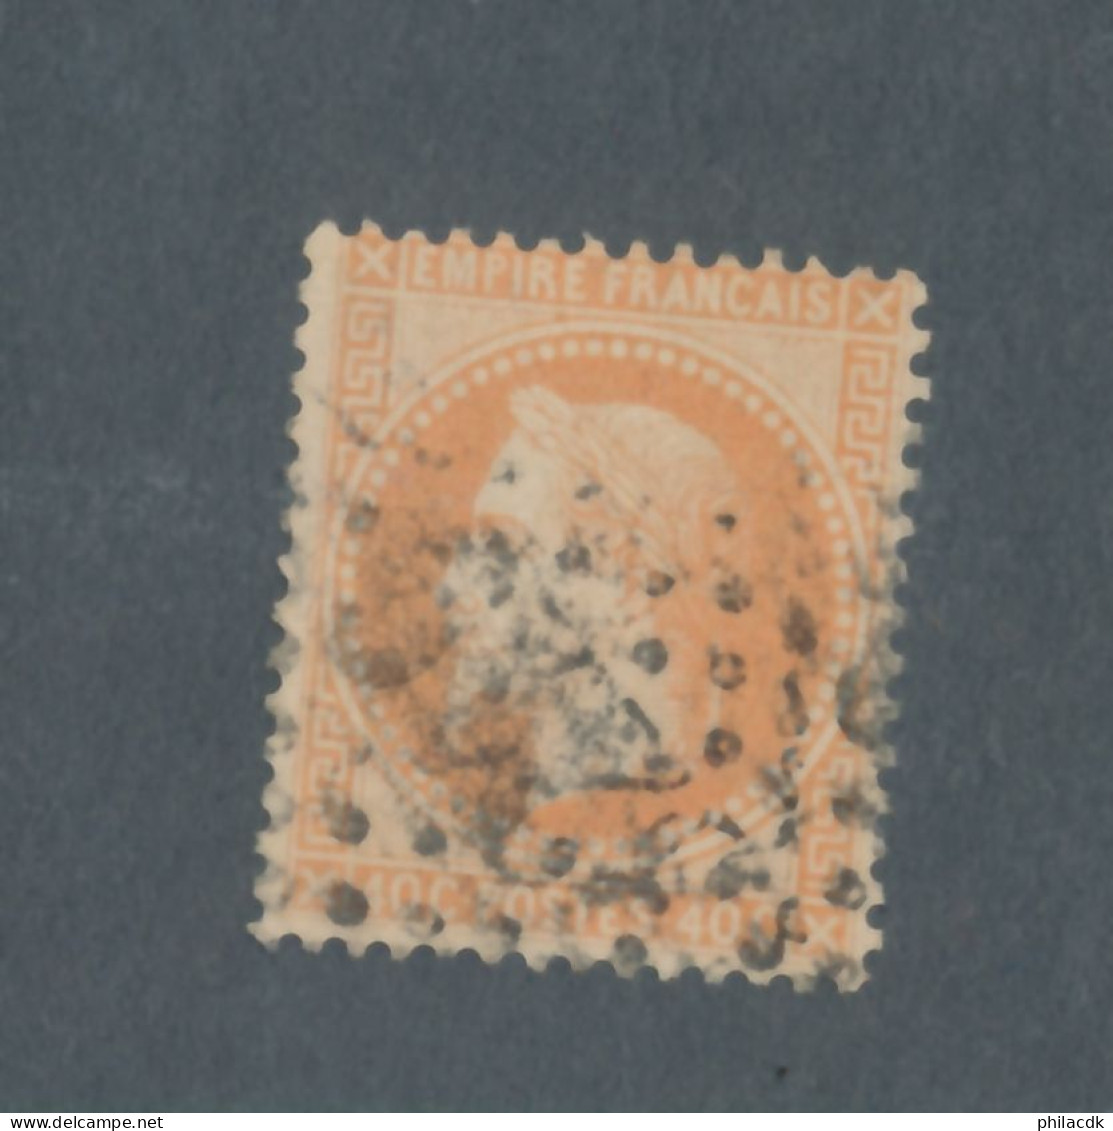 FRANCE - N° 31 OBLITERE AVEC GC 3219 ROUEN - COTE : 25€ - 1868 - 1863-1870 Napoleon III With Laurels